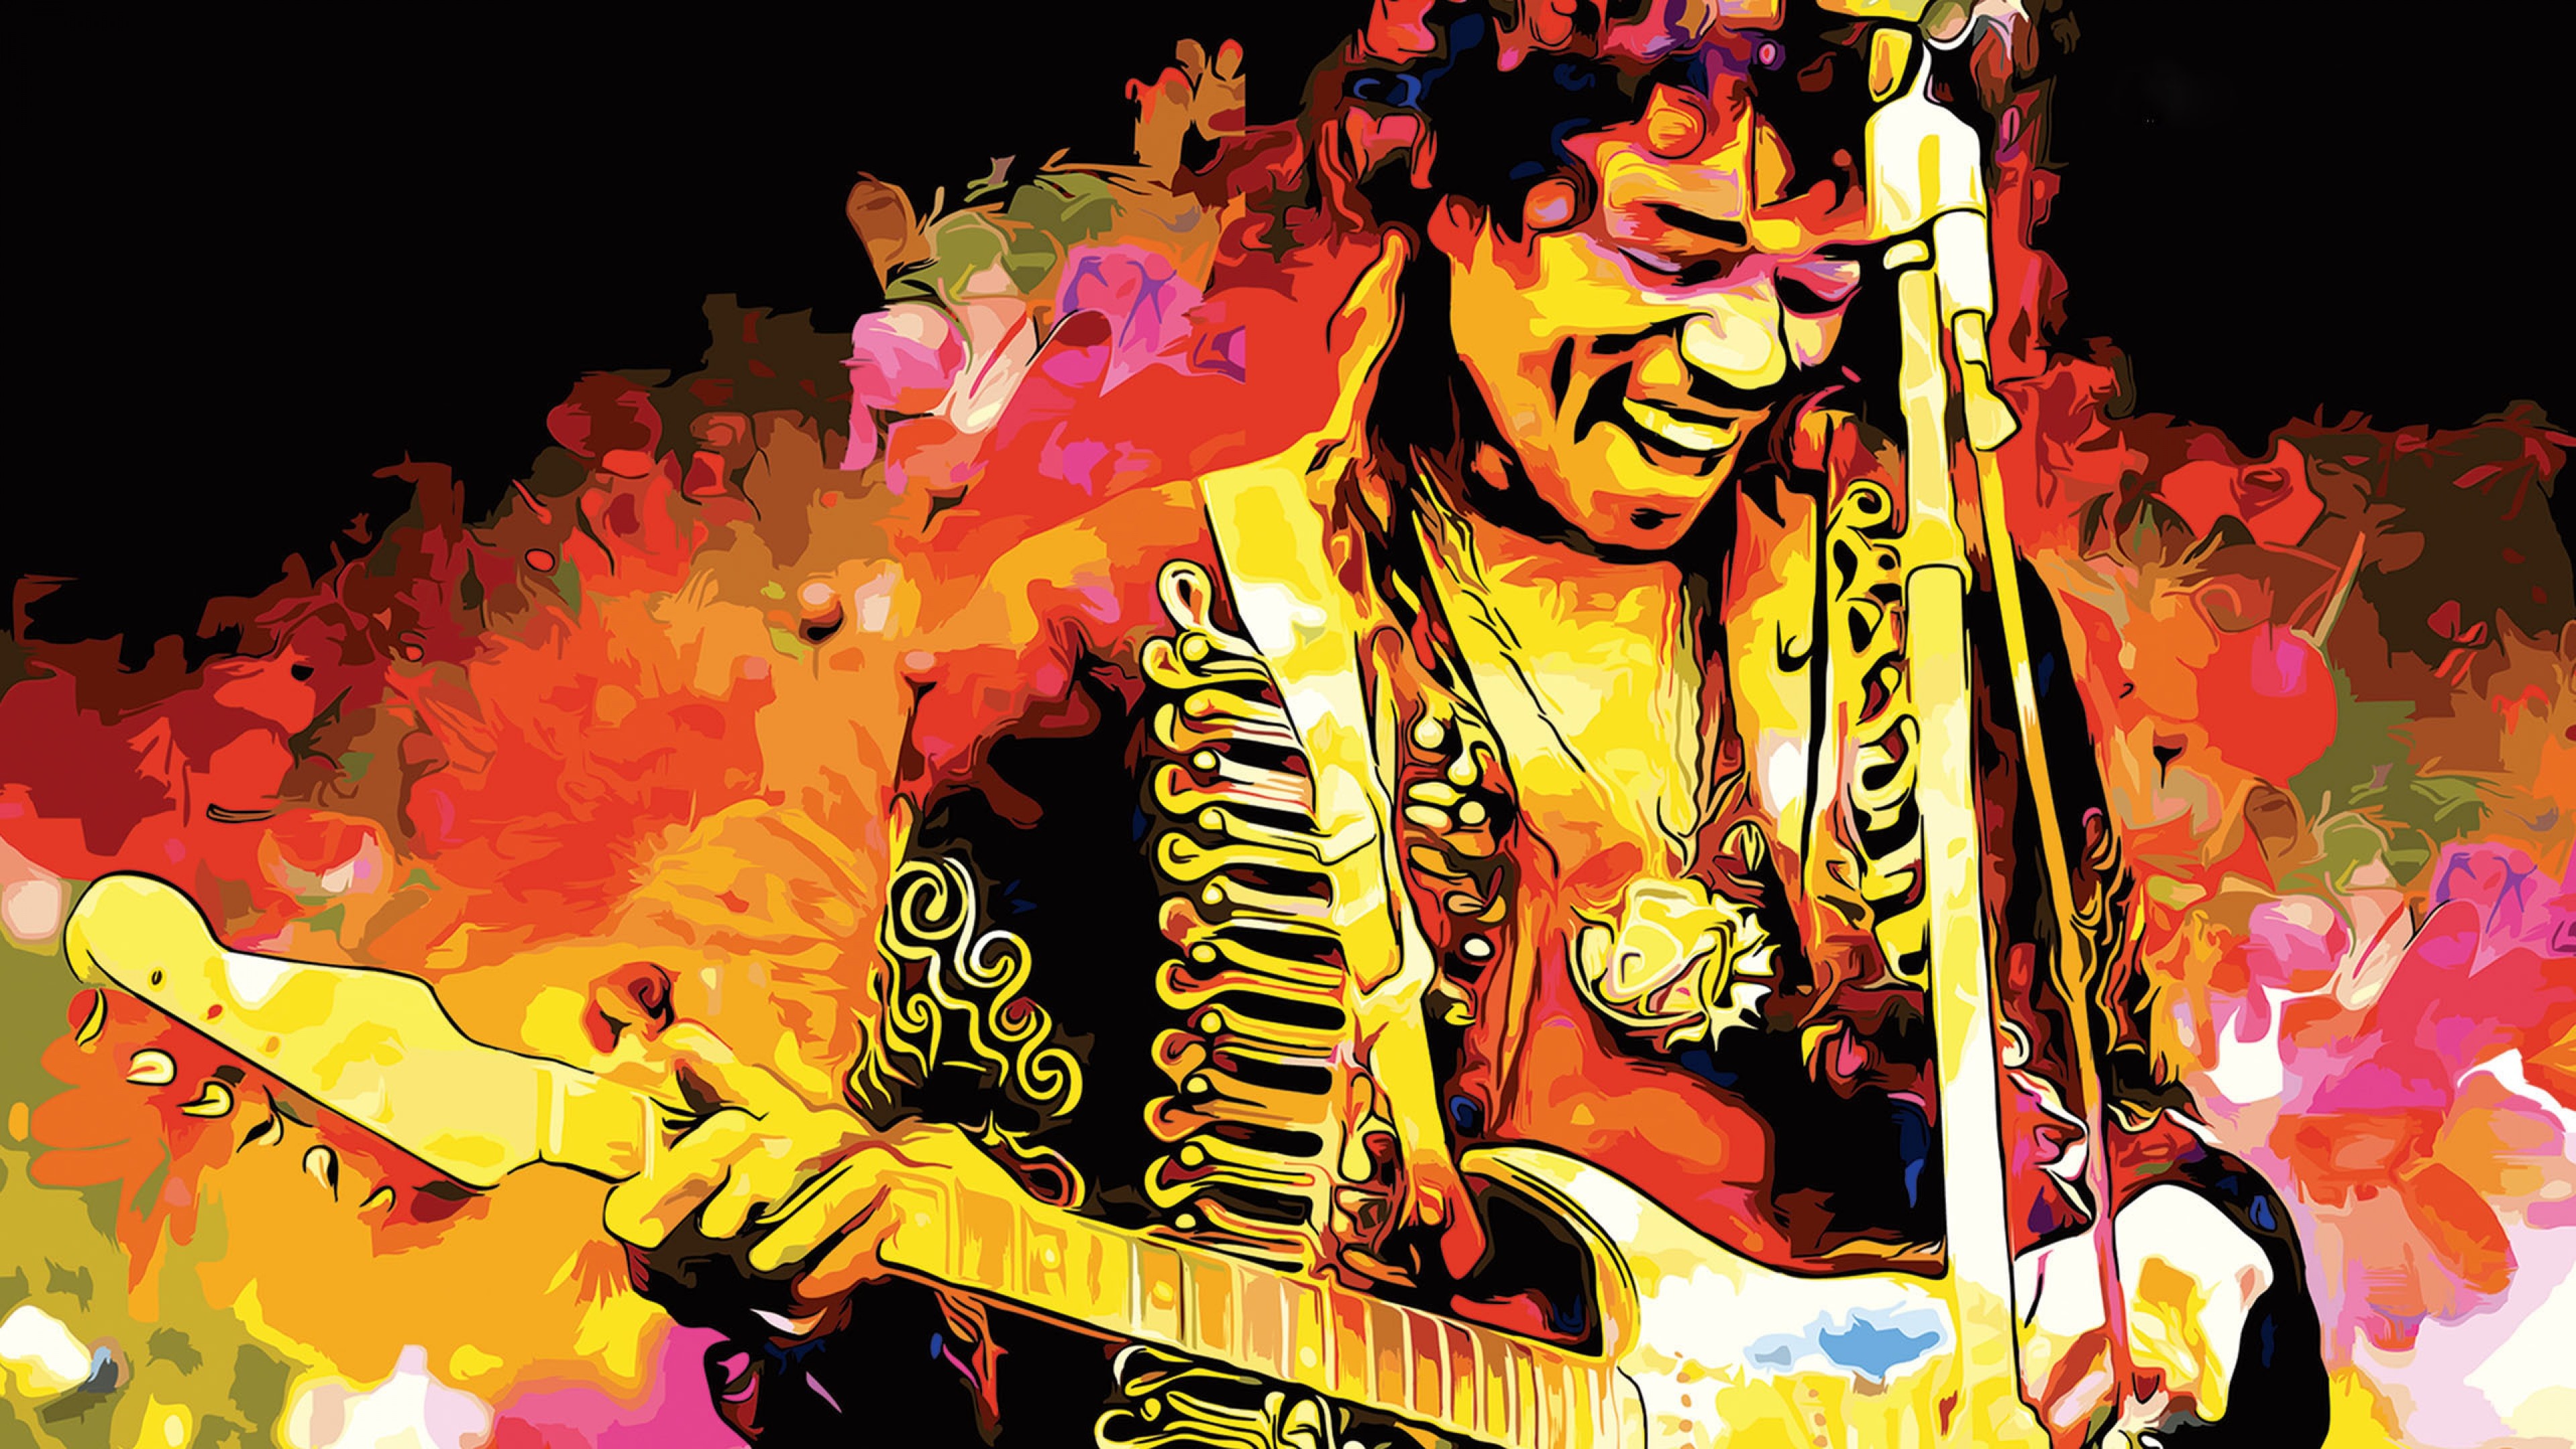 3840x2160 Jimi Hendrix wÃ¤re am 27.11.2017 75 Jahre alt geworden.